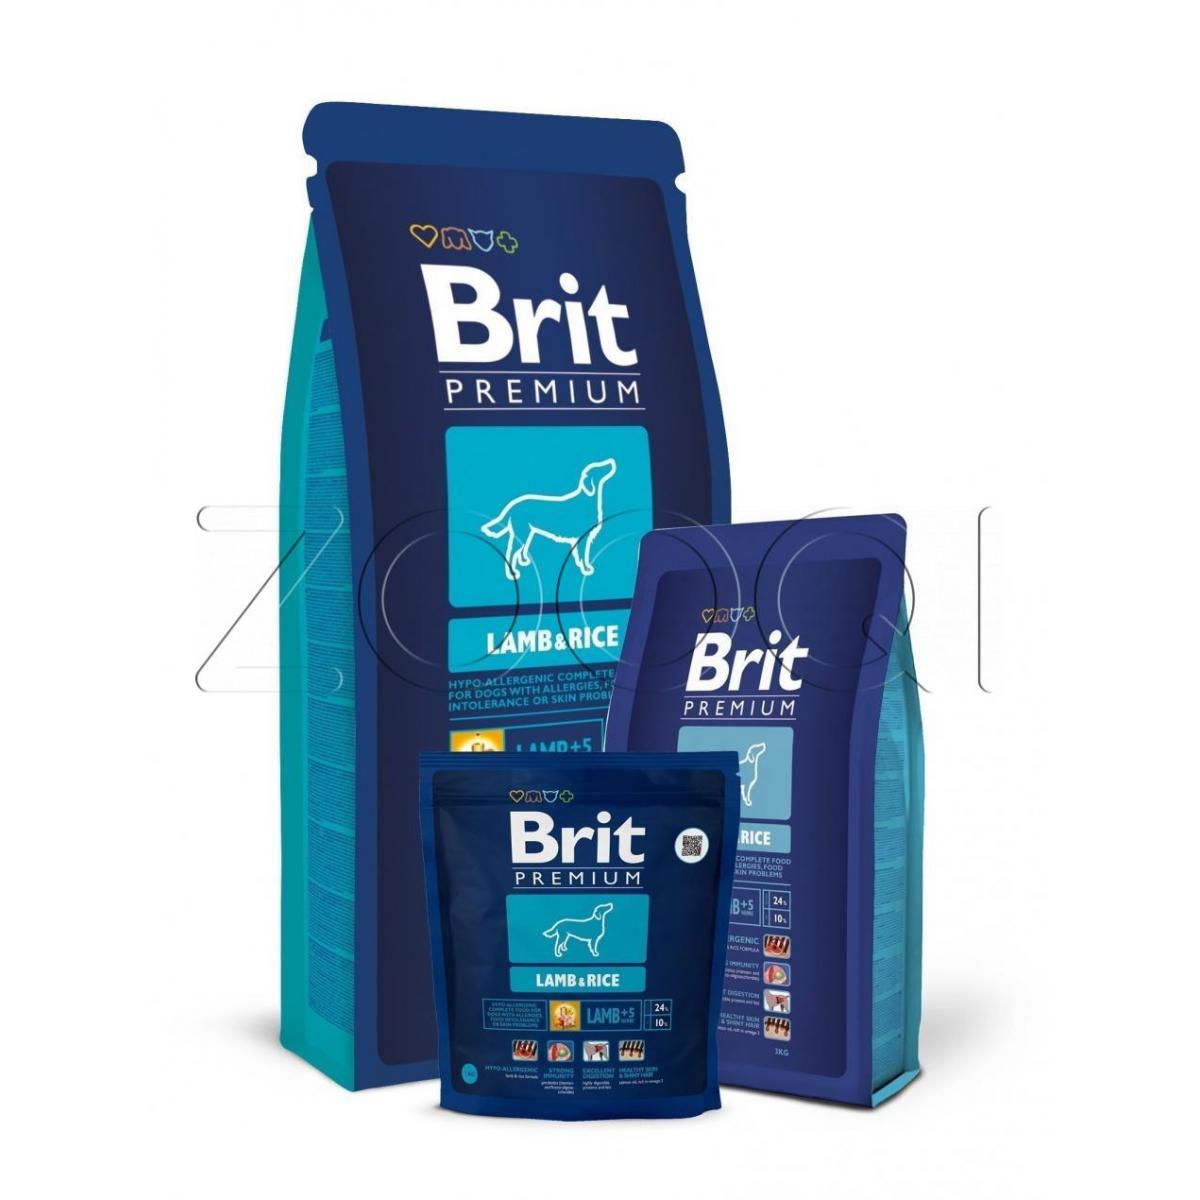 Брит для собак 15 кг. Brit Premium by nature, Junior s 15kg. Корма для собак рейтинг 2021.